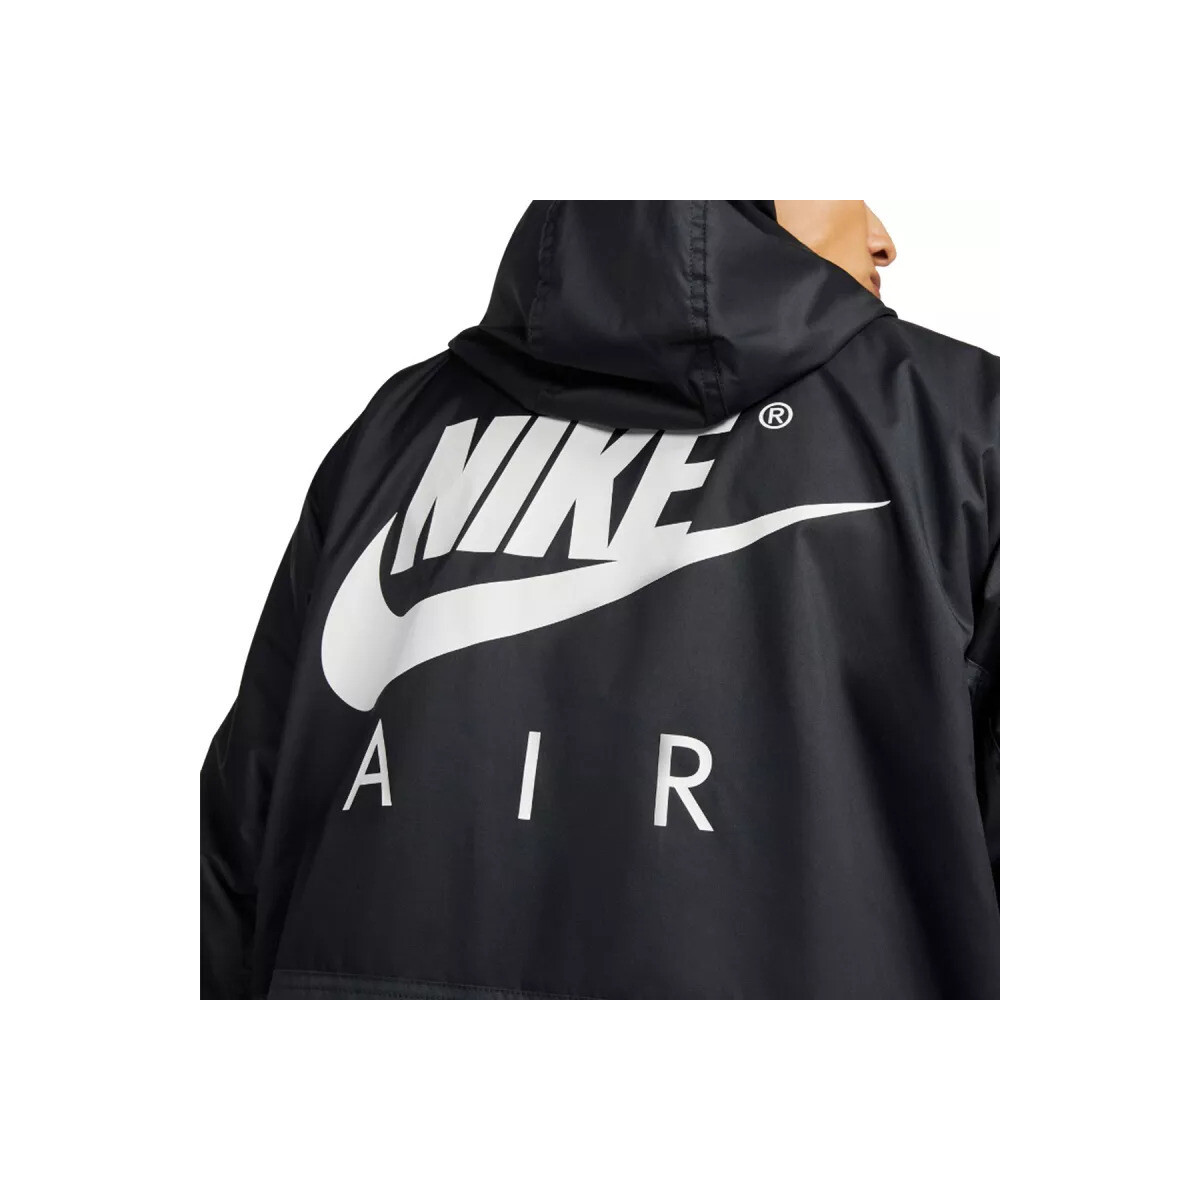 Nike Noir AIR WOVEN LINED 7jlBe4Ml